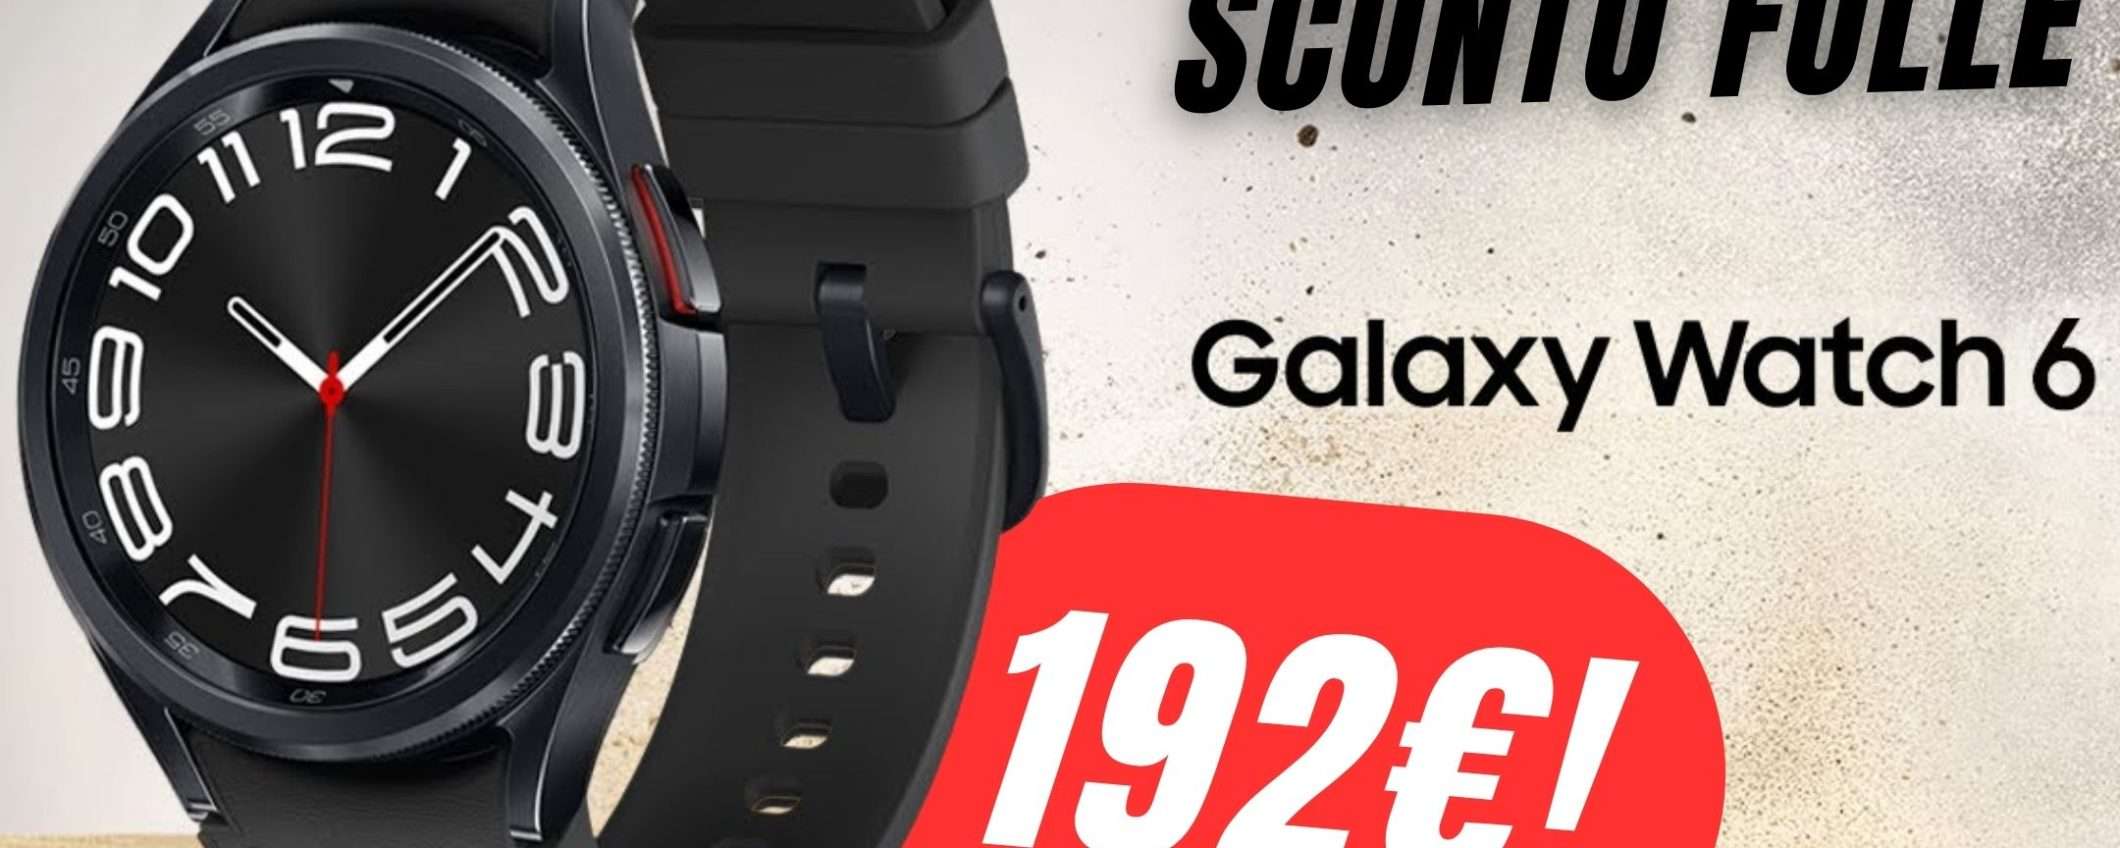 eBay IMPAZZISCE: Samsung Galaxy Watch 6 a 192€!